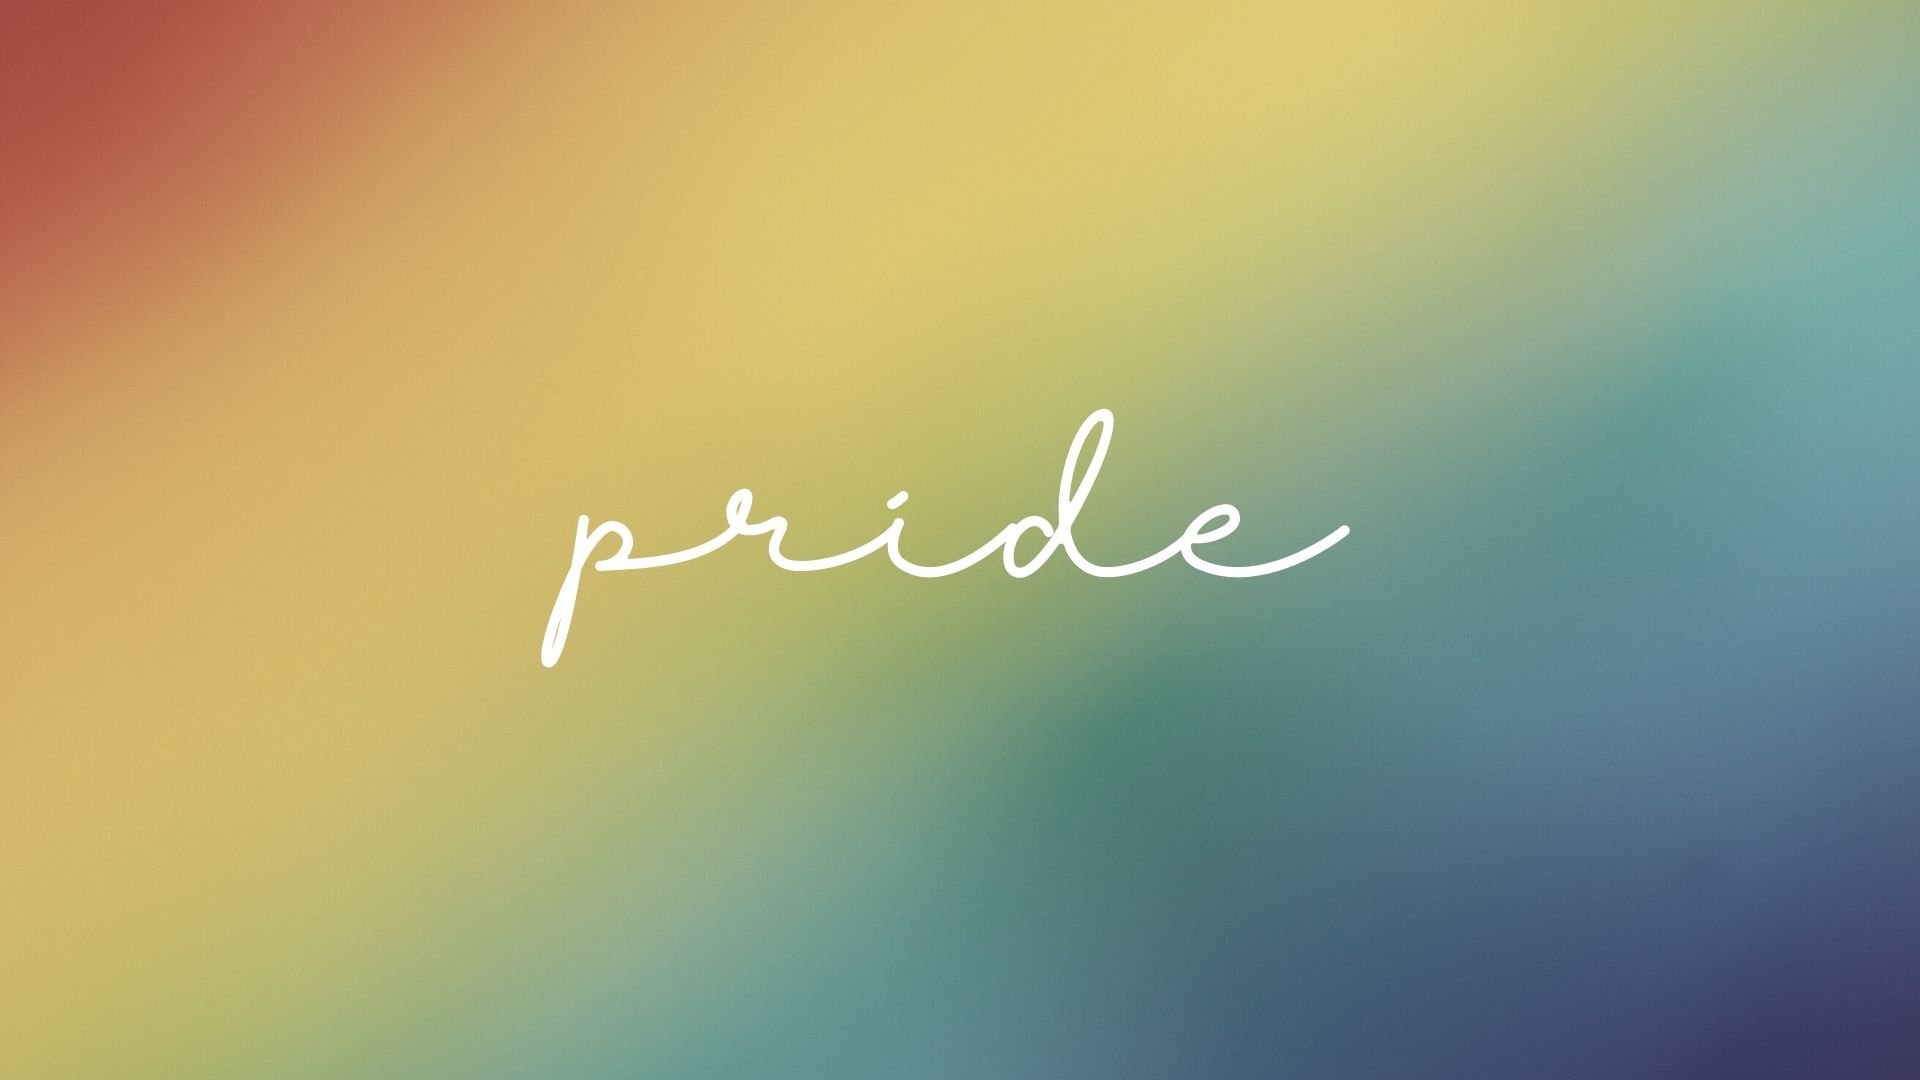 June is Pride Month in Ontario